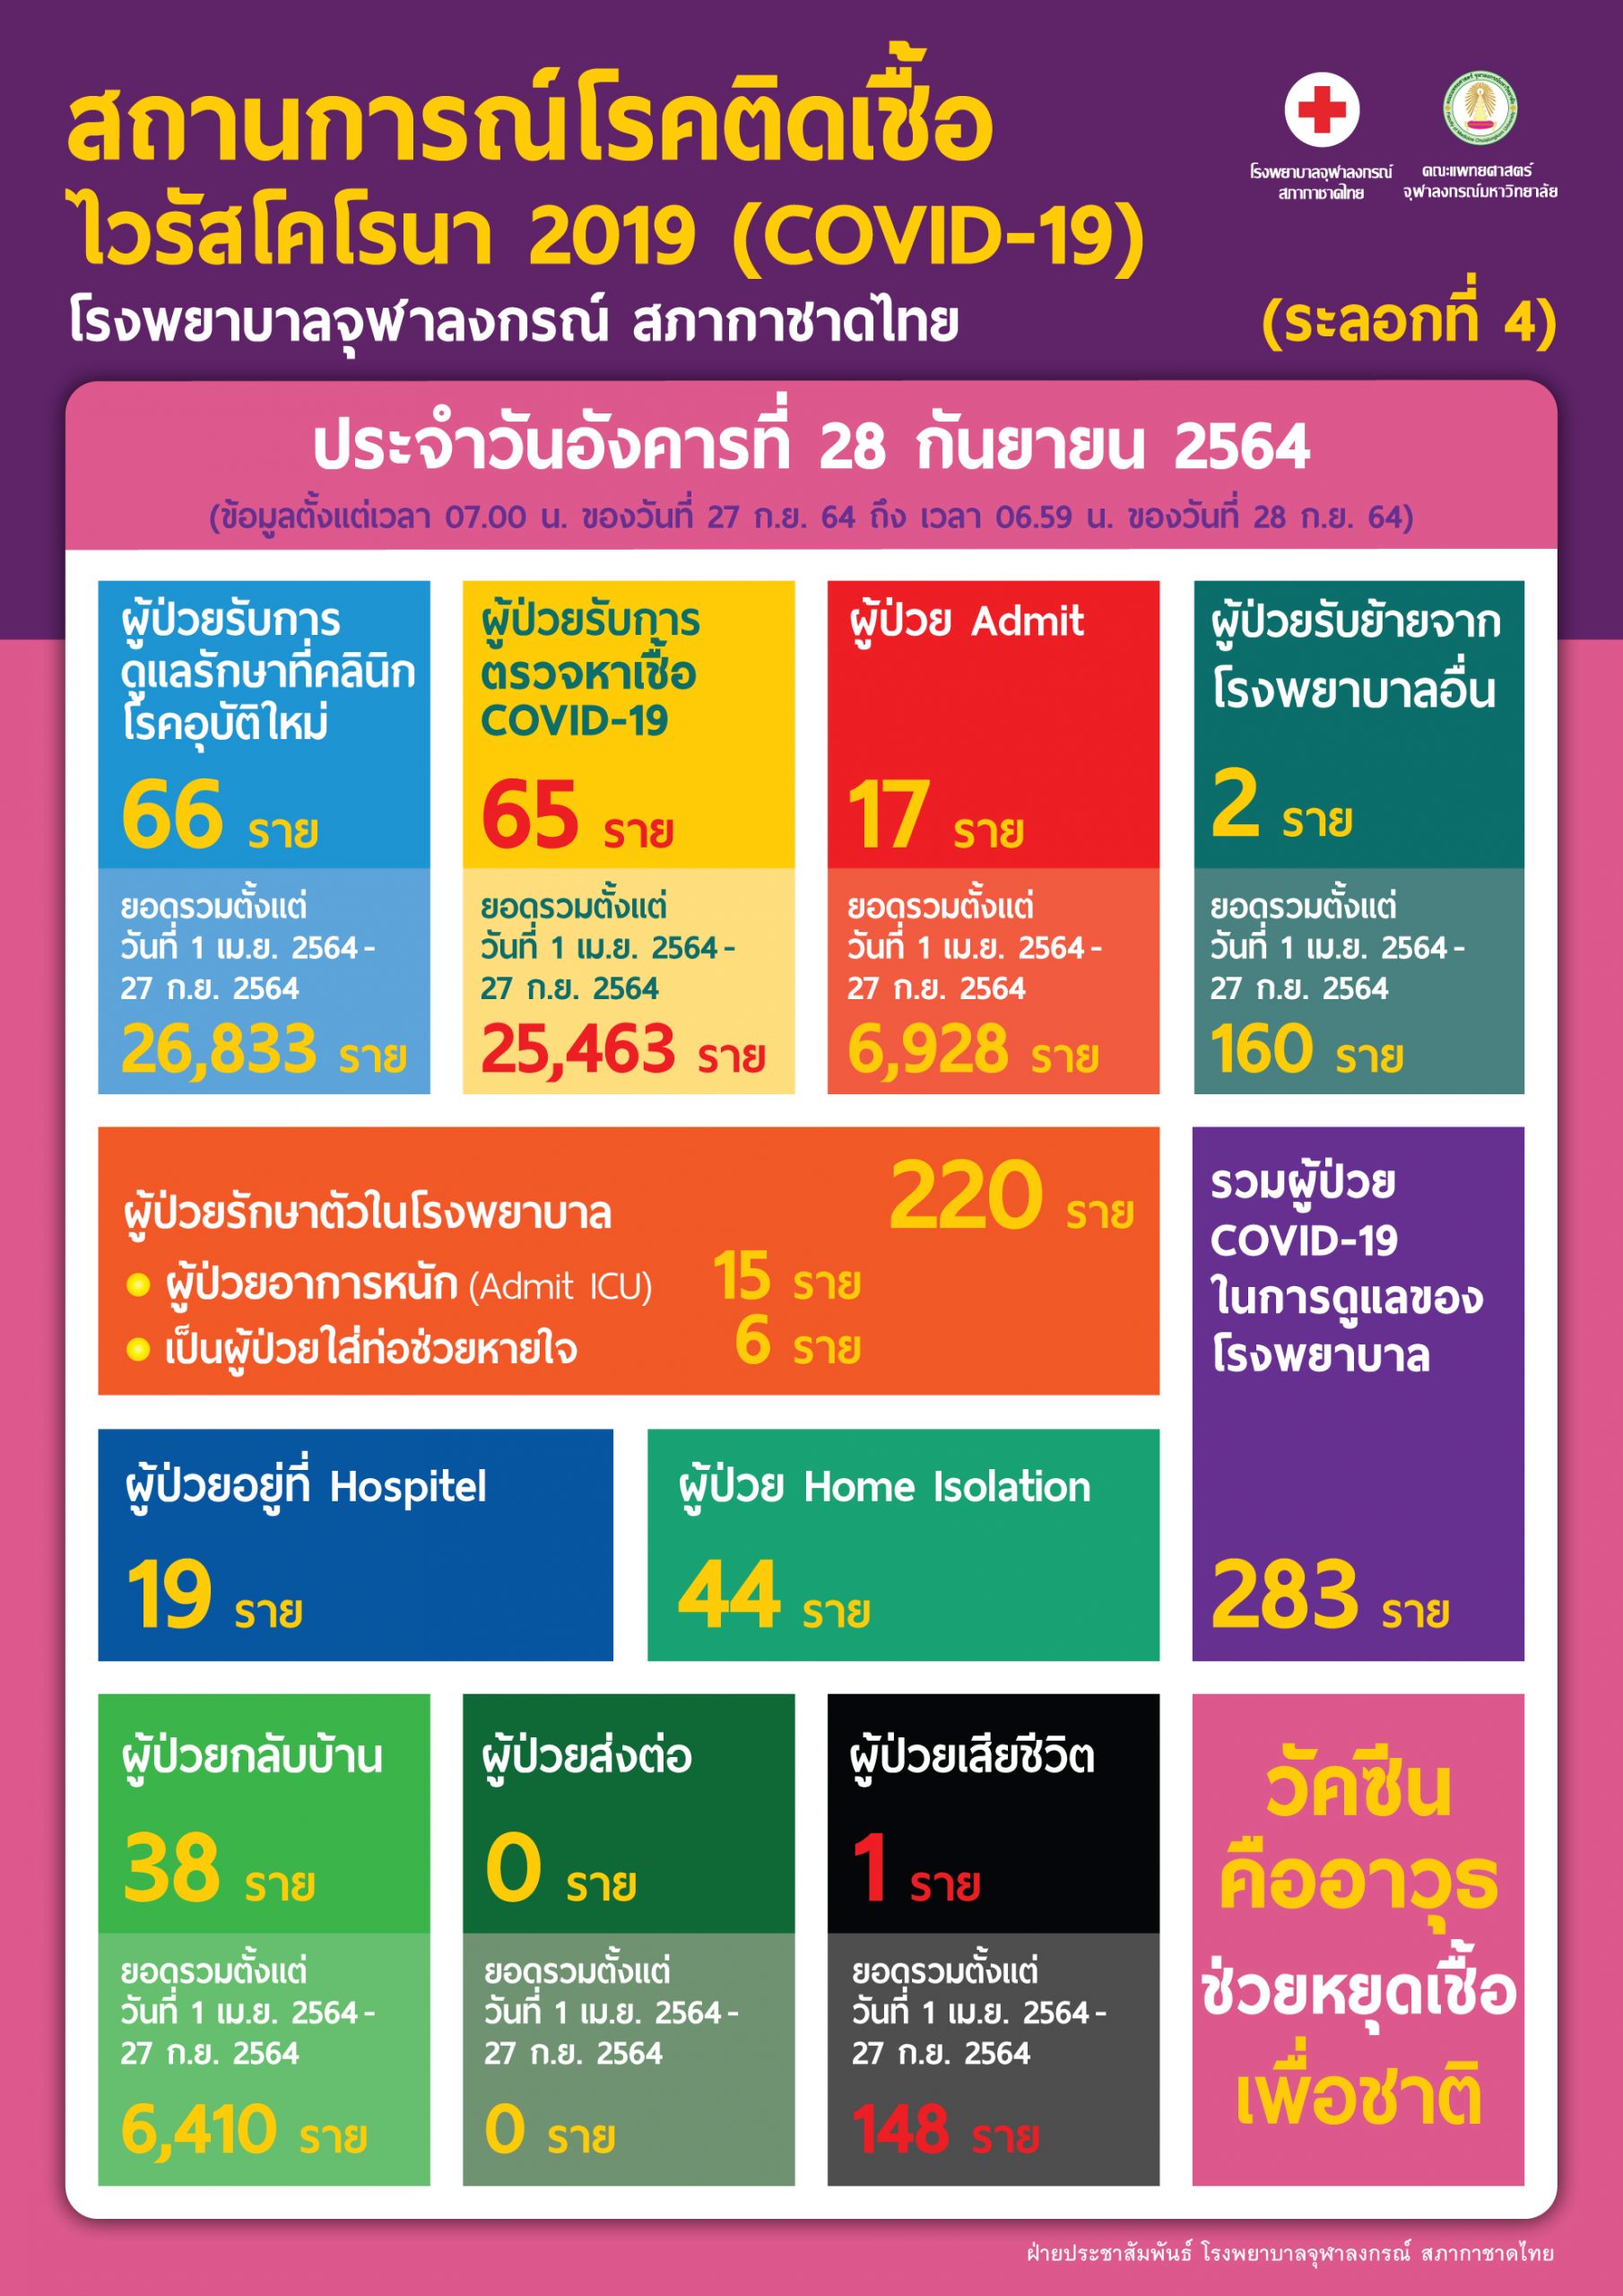 สถานการณ์โรคติดเชื้อไวรัสโคโรนา 2019 (COVID-19) (ระลอกที่ 4) โรงพยาบาลจุฬาลงกรณ์ สภากาชาดไทย ประจำวันอังคารที่ 28 กันยายน 2564